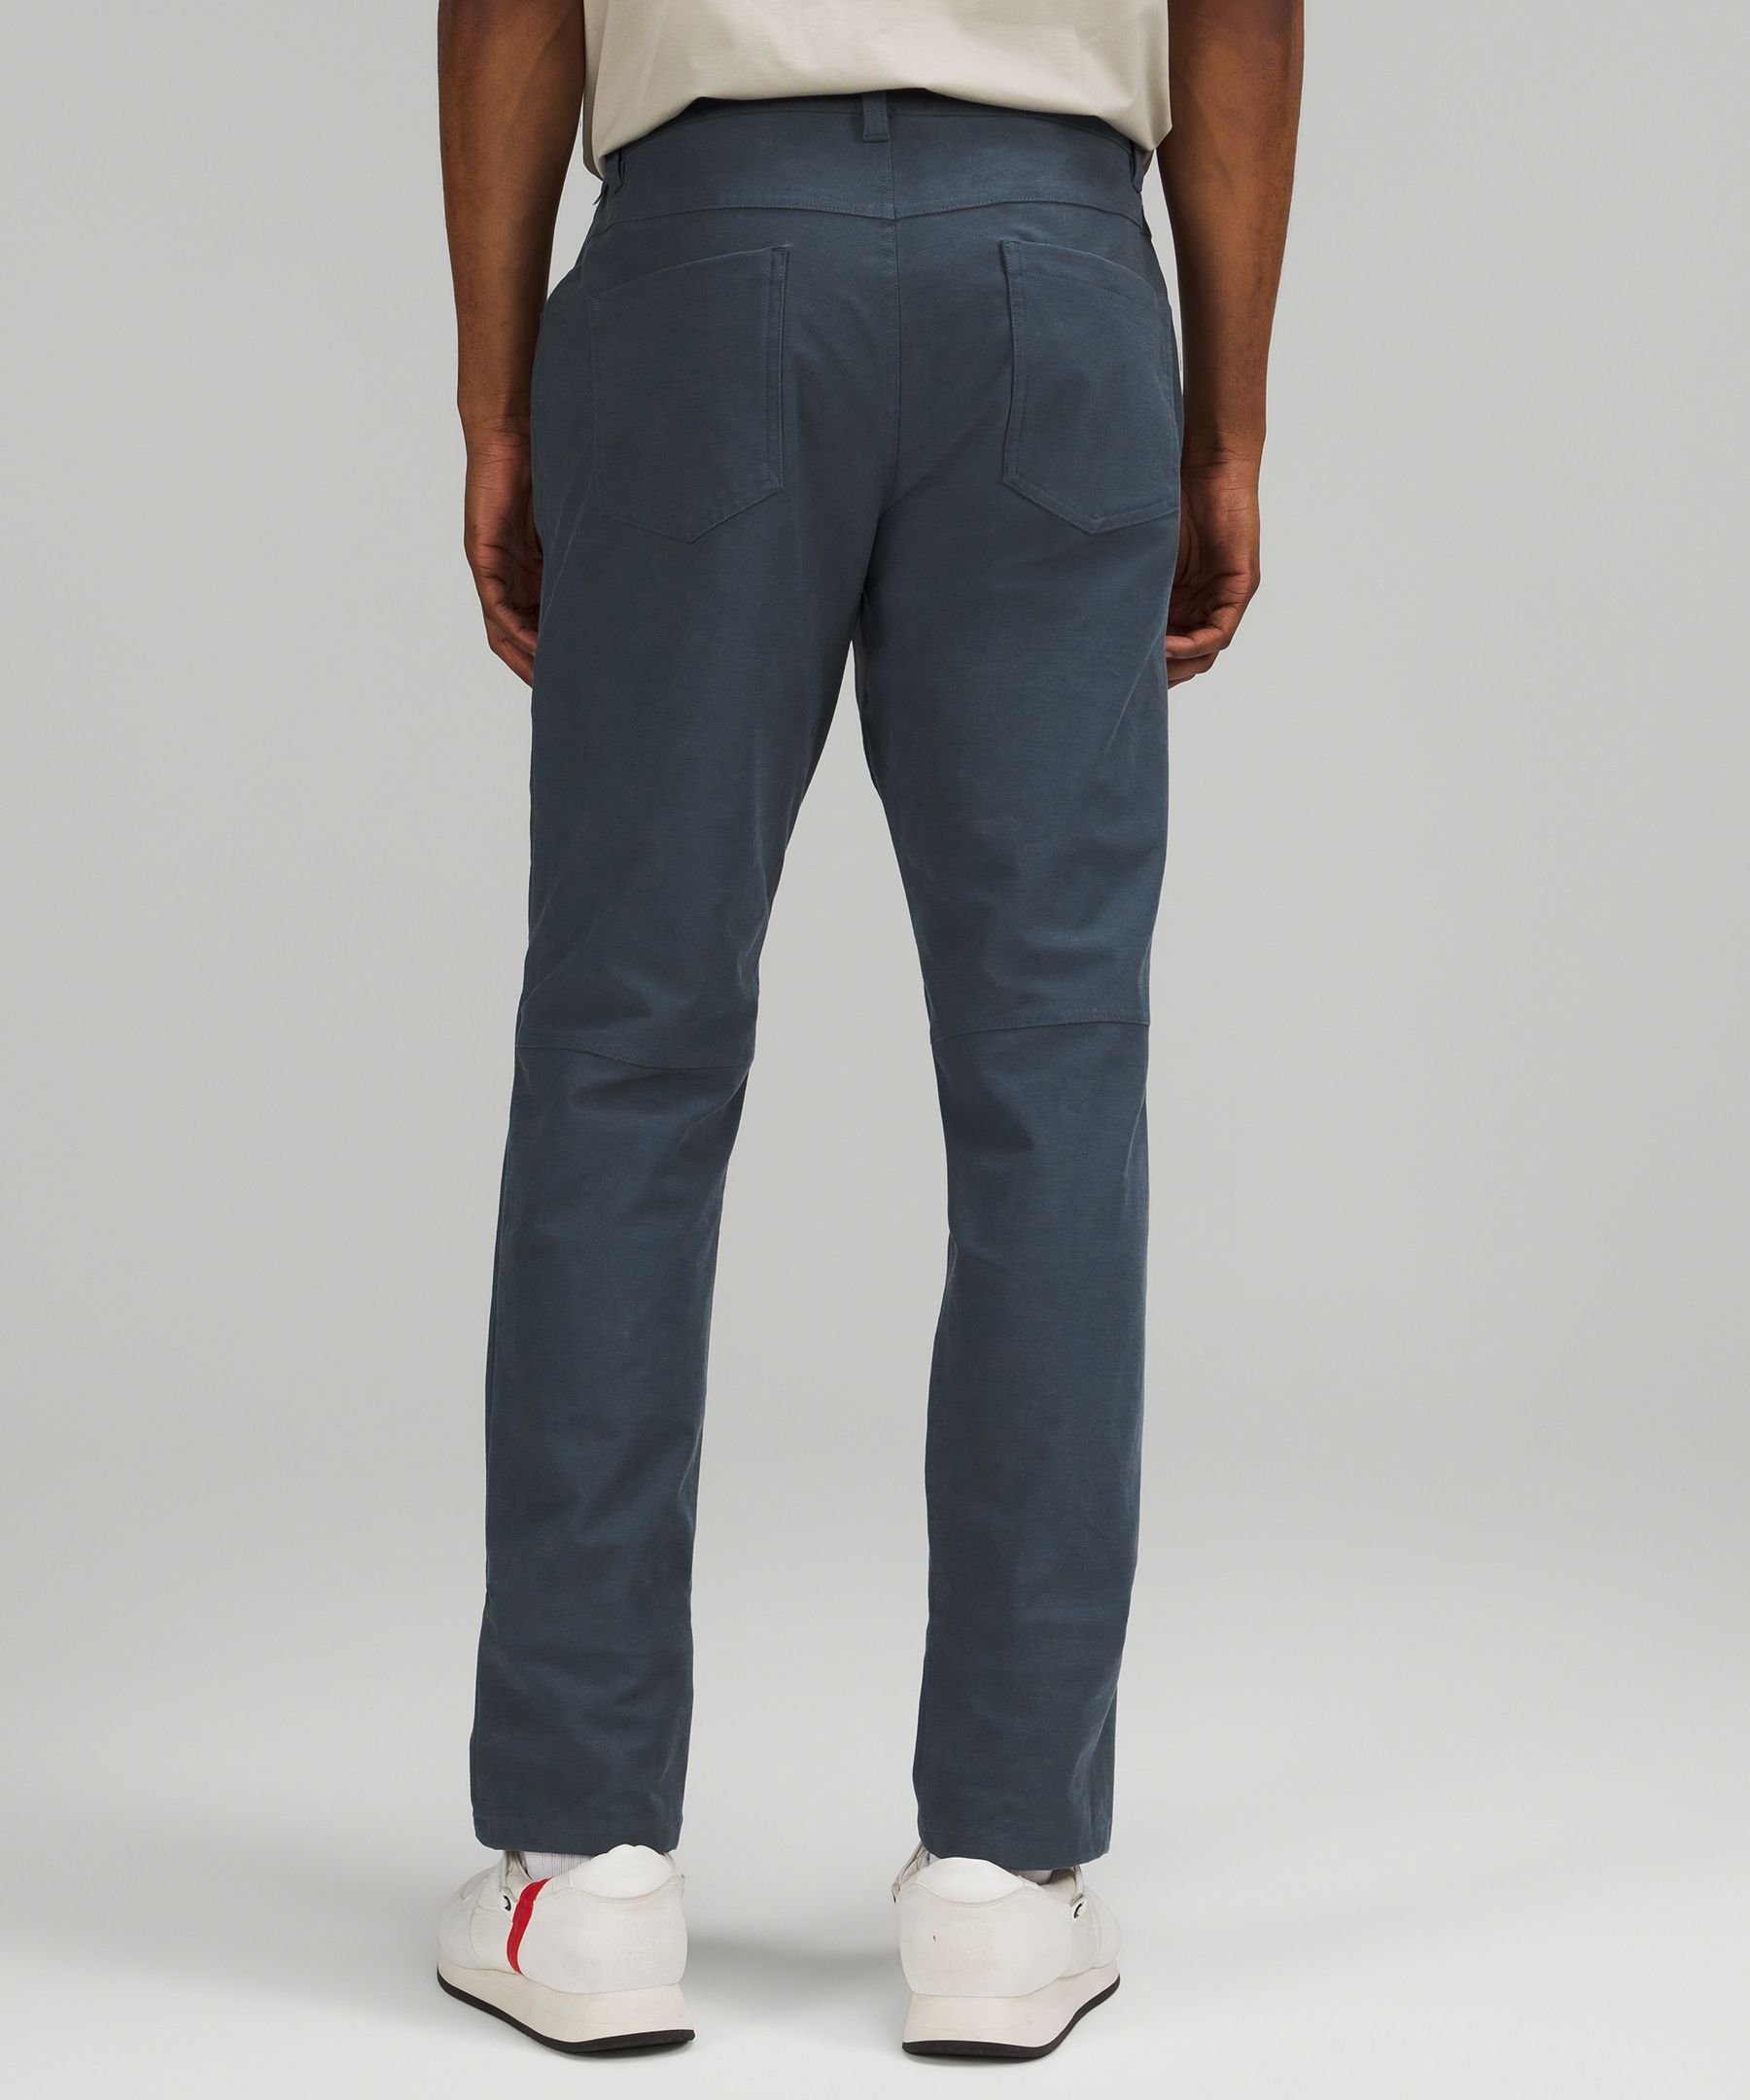 Lululemon athletica ABC Slim-Fit 5 Pocket Pant 32 *Utilitech, Men's  Trousers